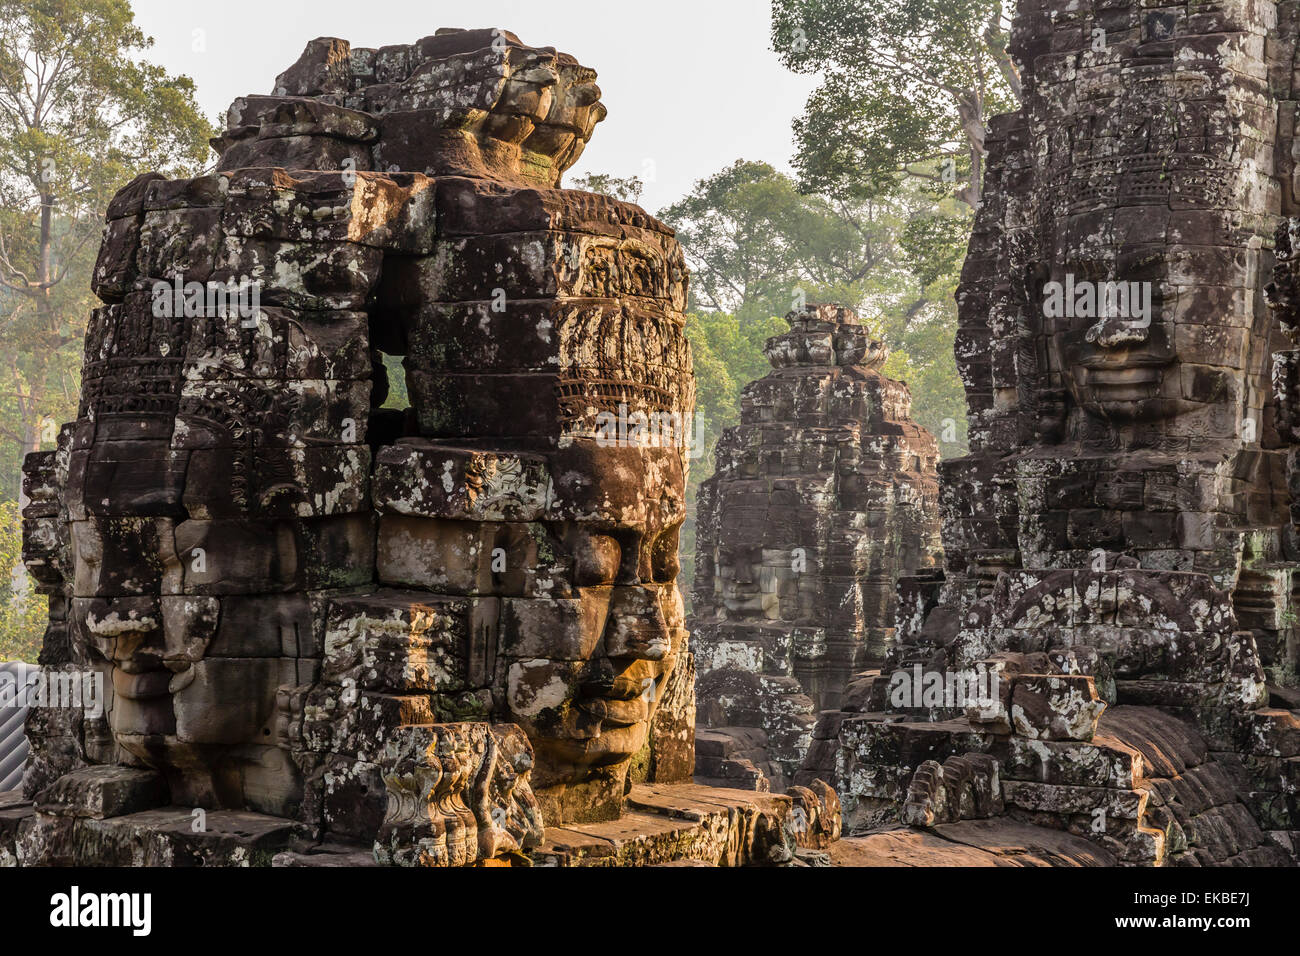 Face à quatre tours à Prasat du Bayon, Angkor Thom, Angkor, l'UNESCO, Siem Reap, Cambodge, Indochine, Asie du Sud, Asie Banque D'Images